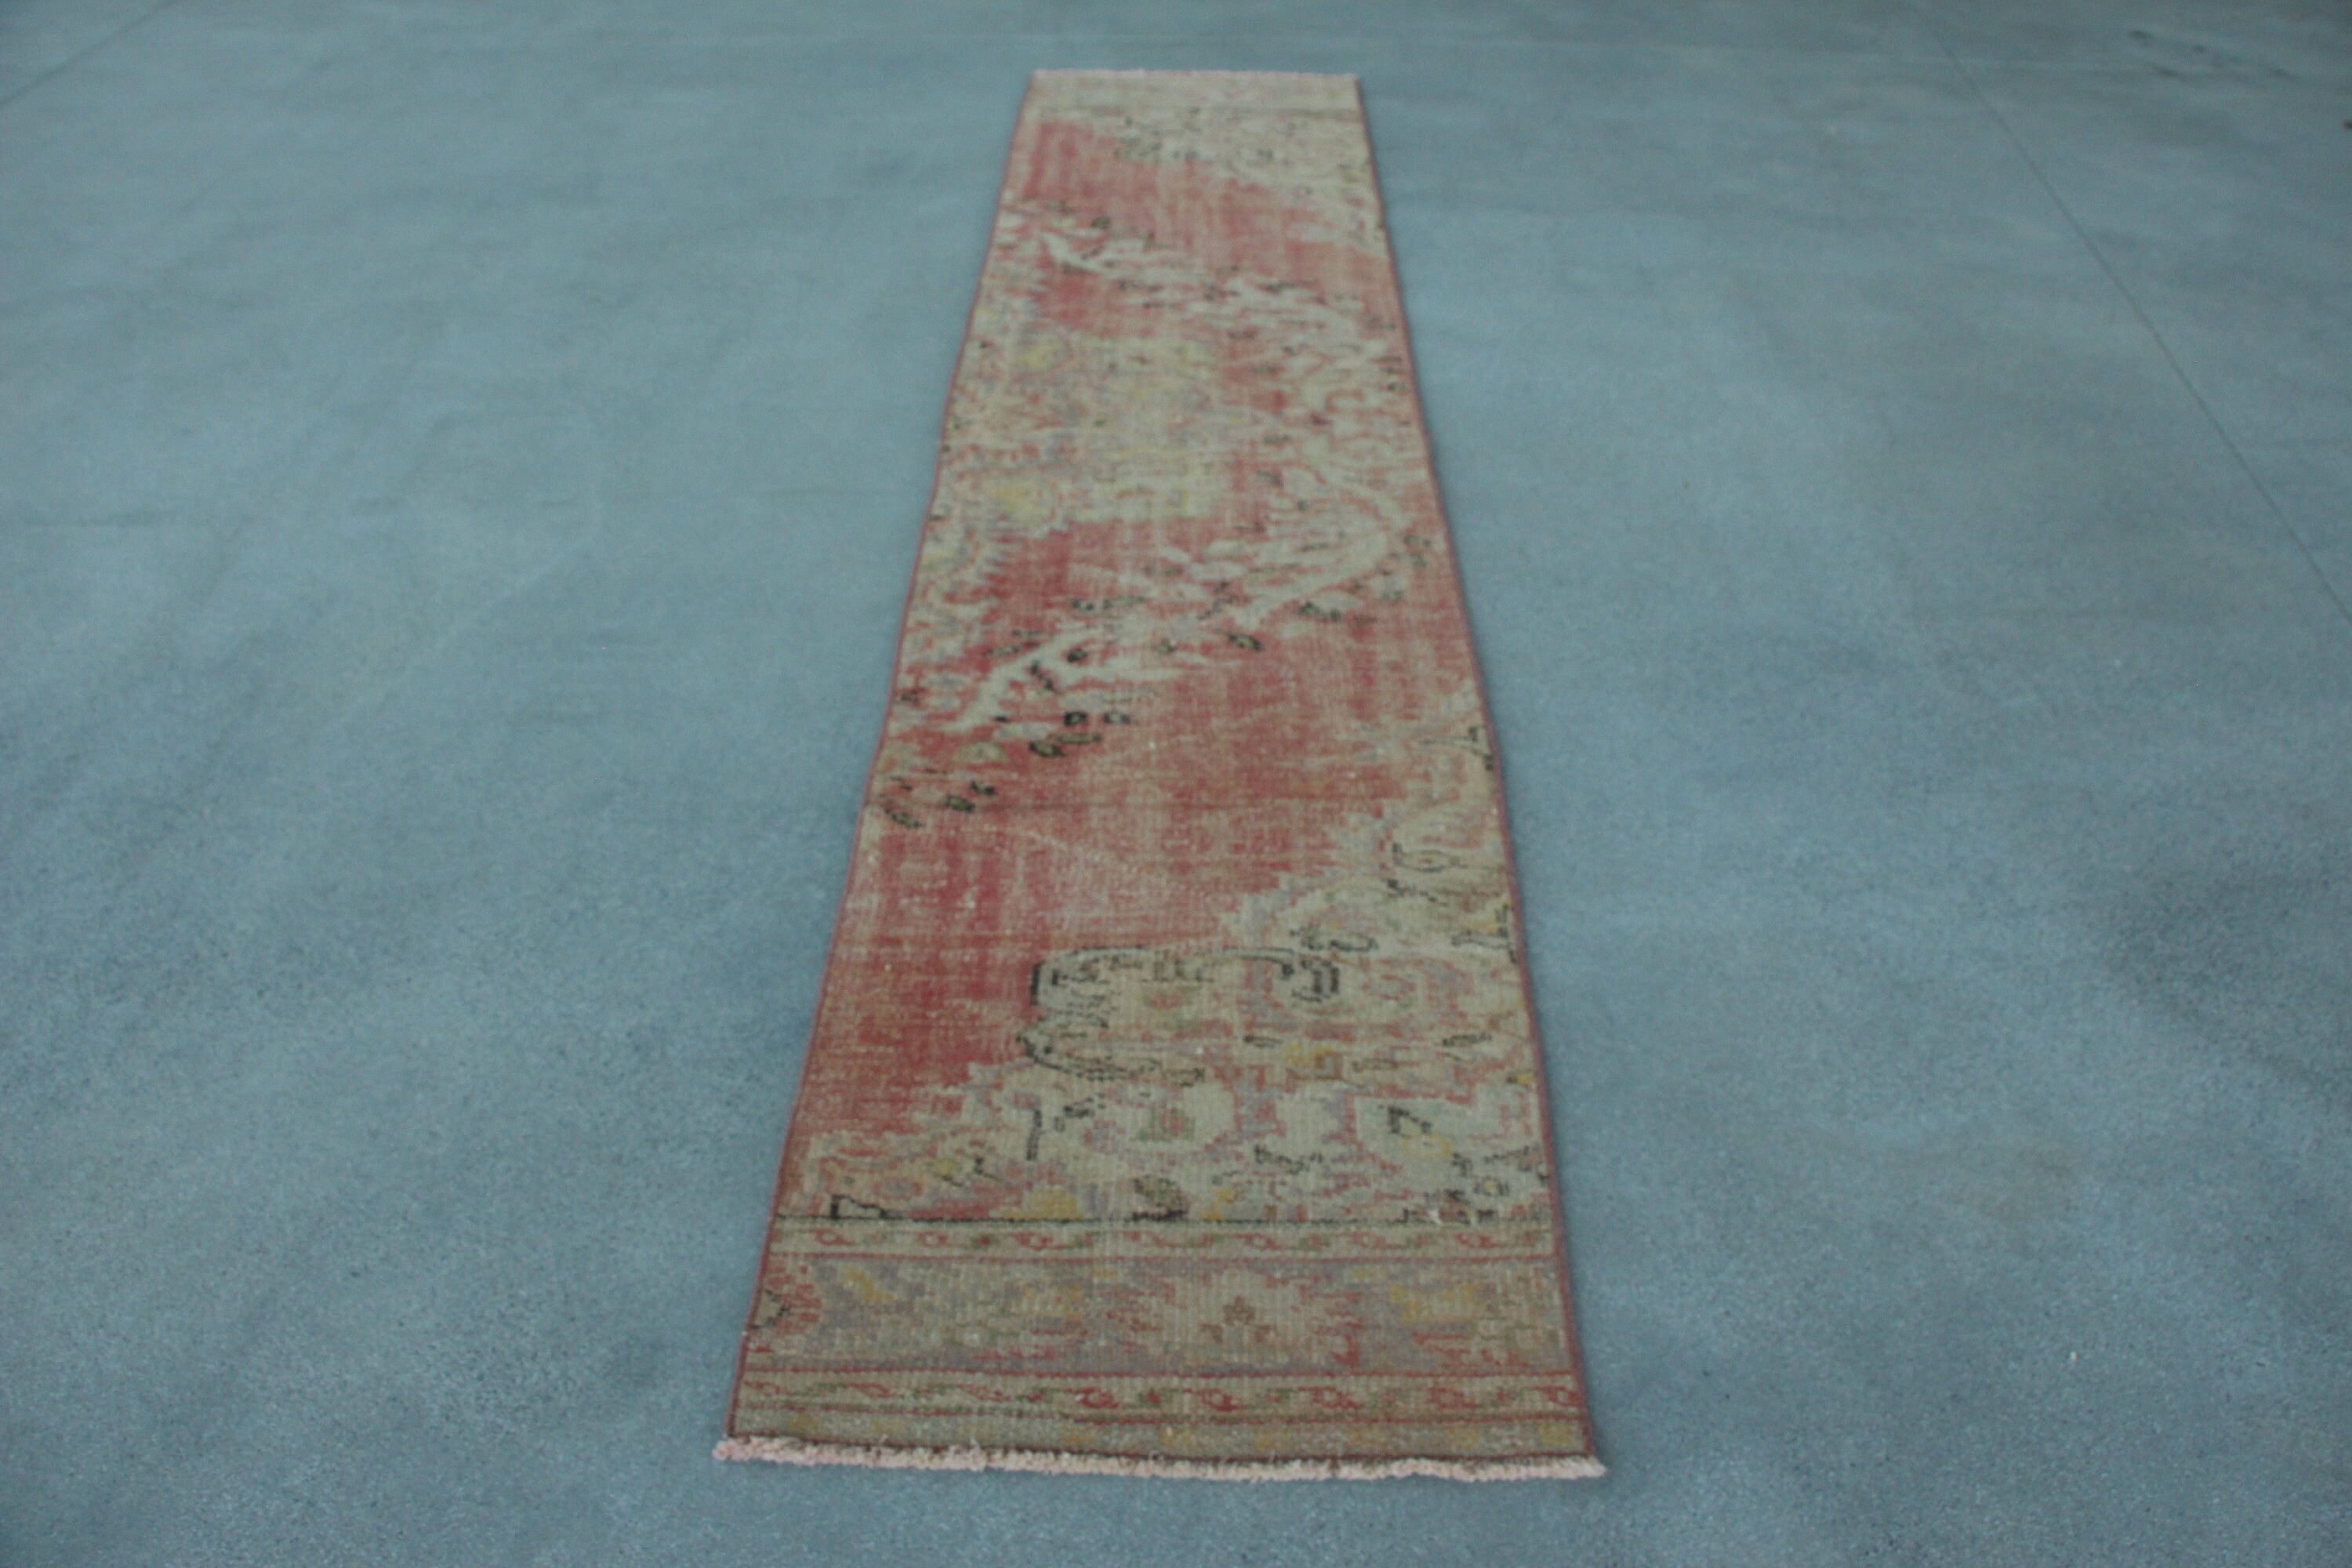 Turkish Rug, Rugs for Corridor, Vintage Rug, 2.2x10.5 ft Runner Rugs, Corridor Rug, Stair Rug, Cool Rug, Red Anatolian Rug, Bedroom Rugs